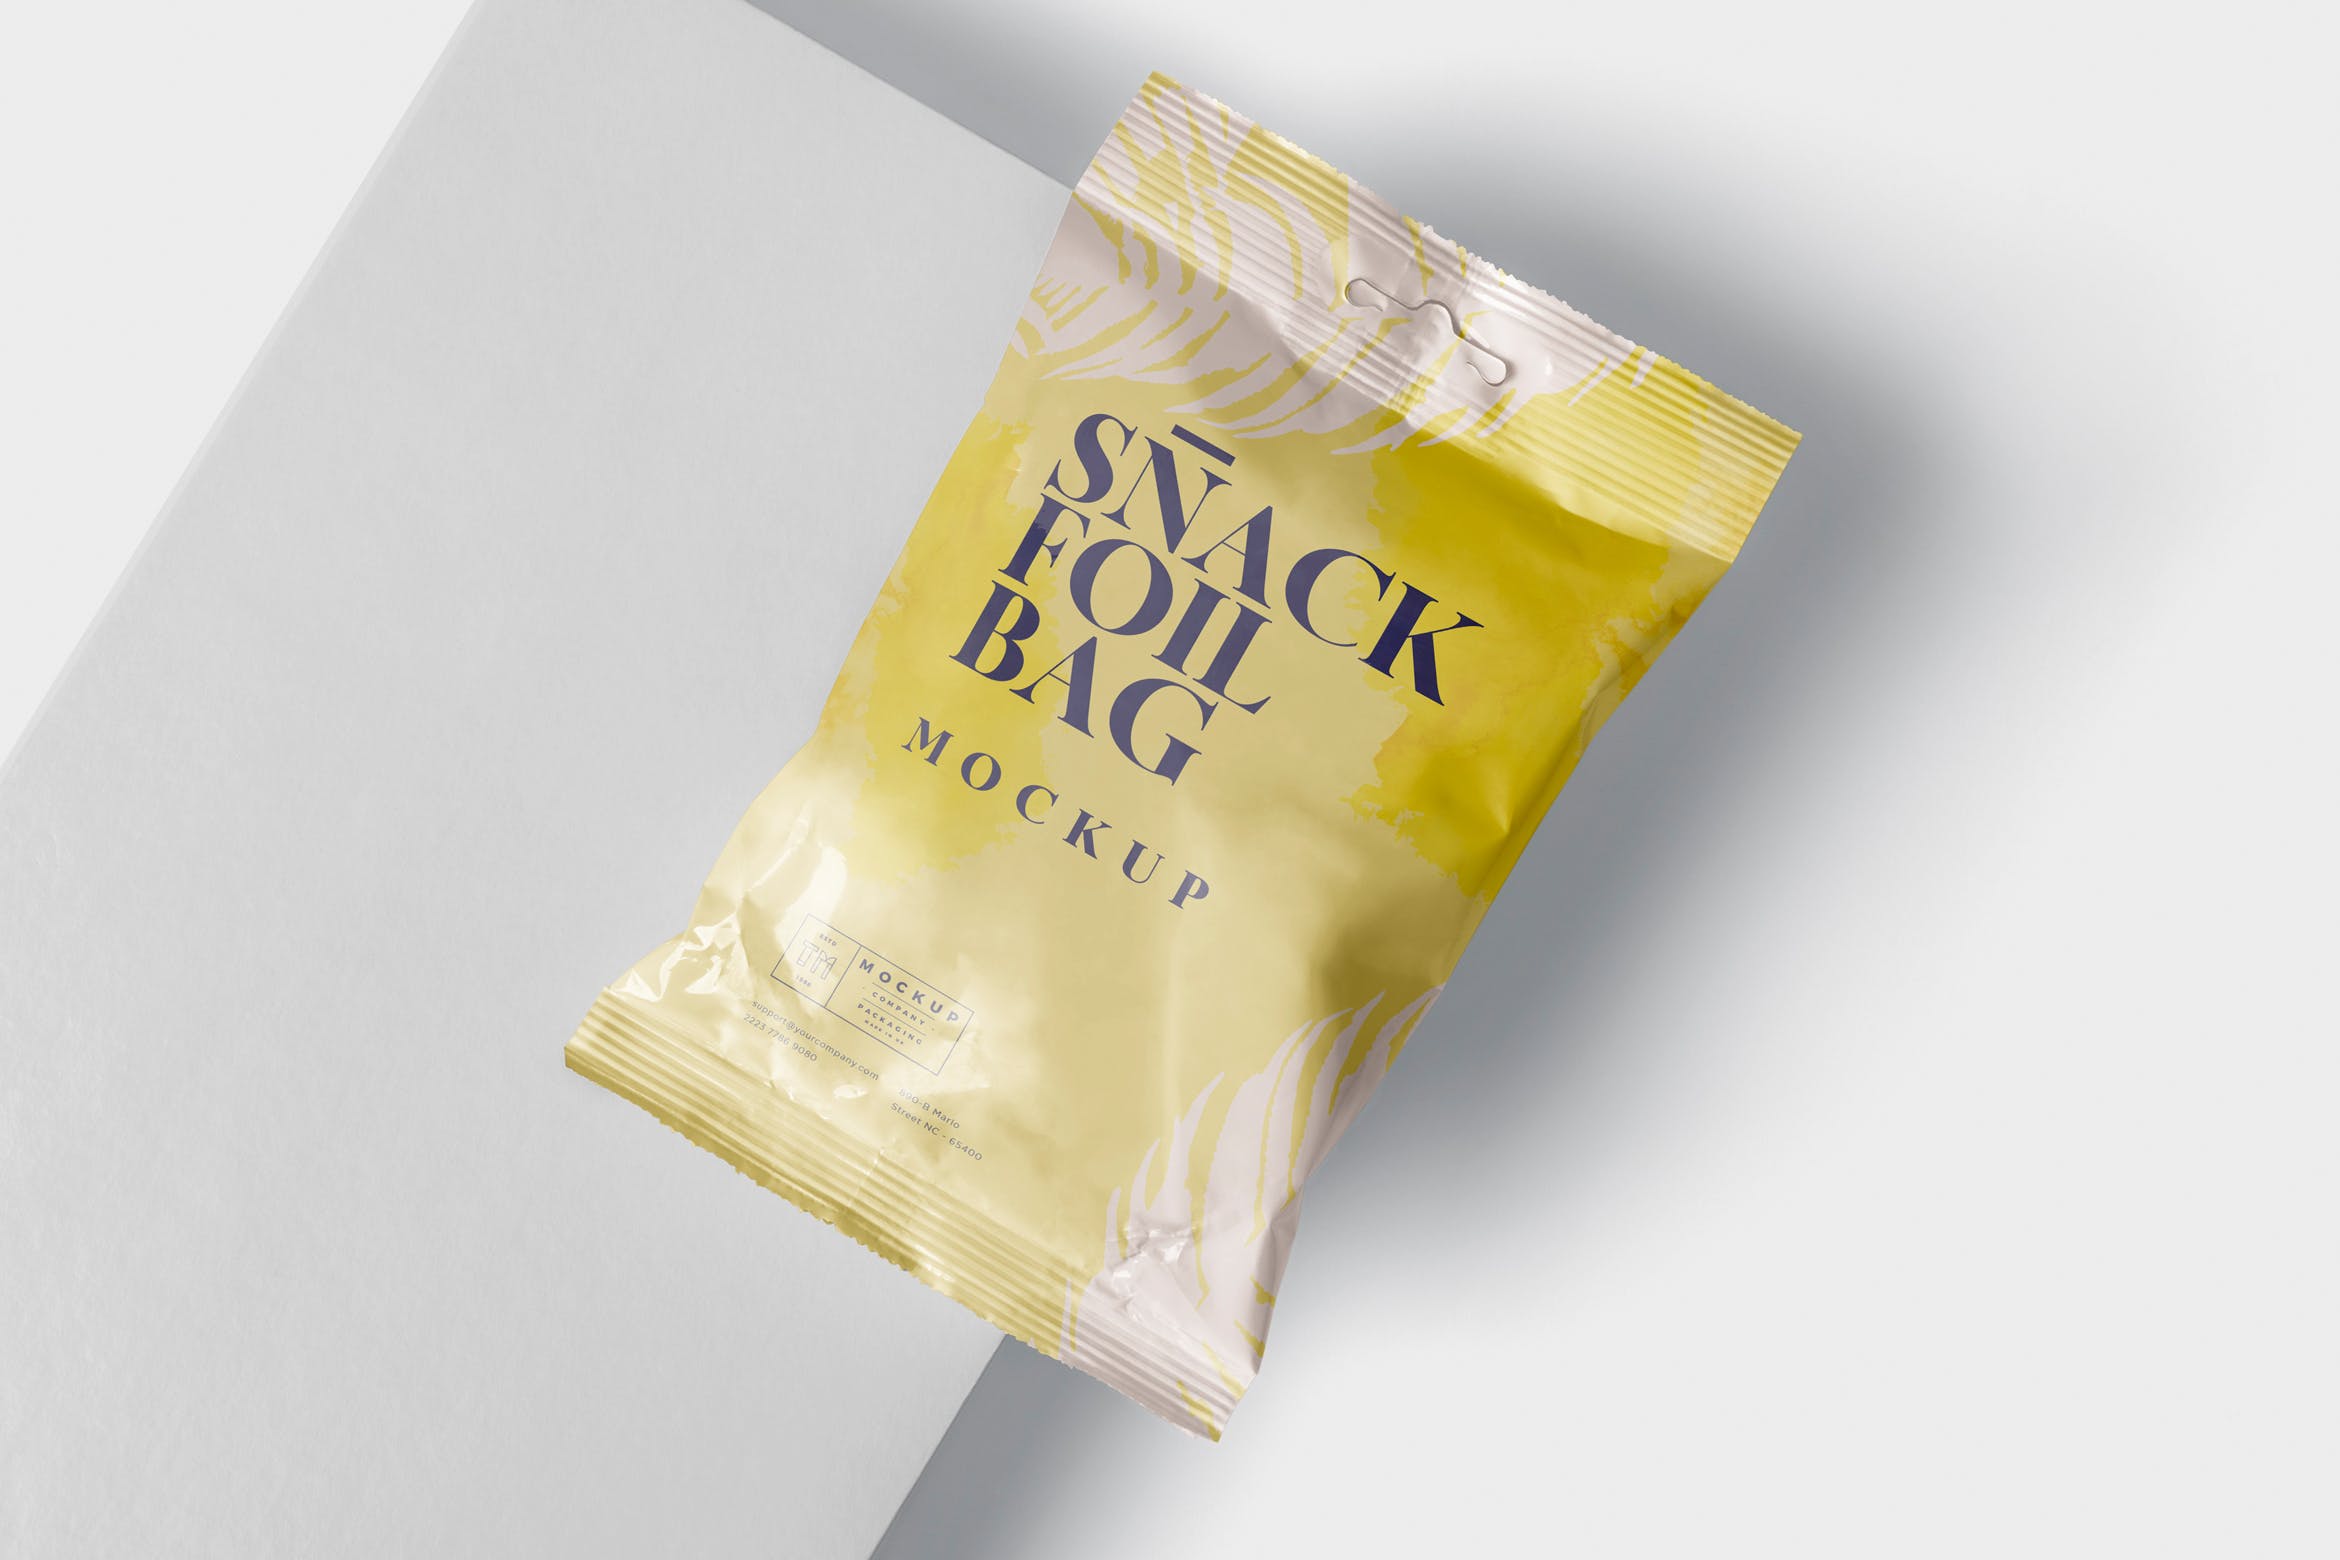 小吃零食铝箔包装袋设计样机模板 Snack Foil Bag Mockup – Slim Size插图